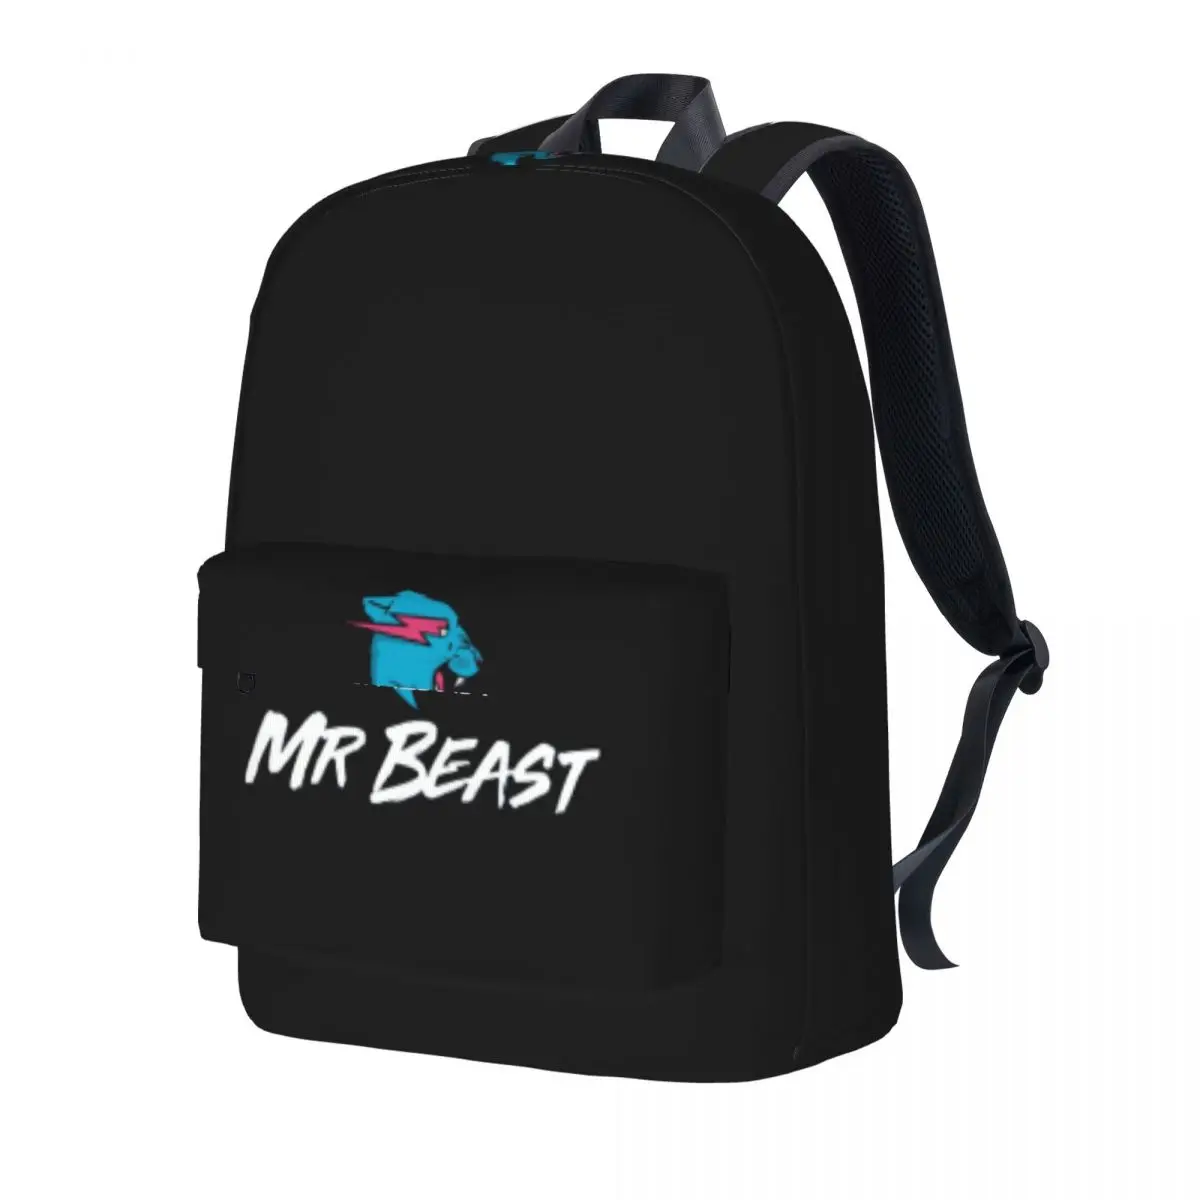 

Рюкзак Mr Beast с забавным принтом животных, милый студенческий дорожный рюкзак унисекс из полиэстера, прочные модные школьные сумки, рюкзак